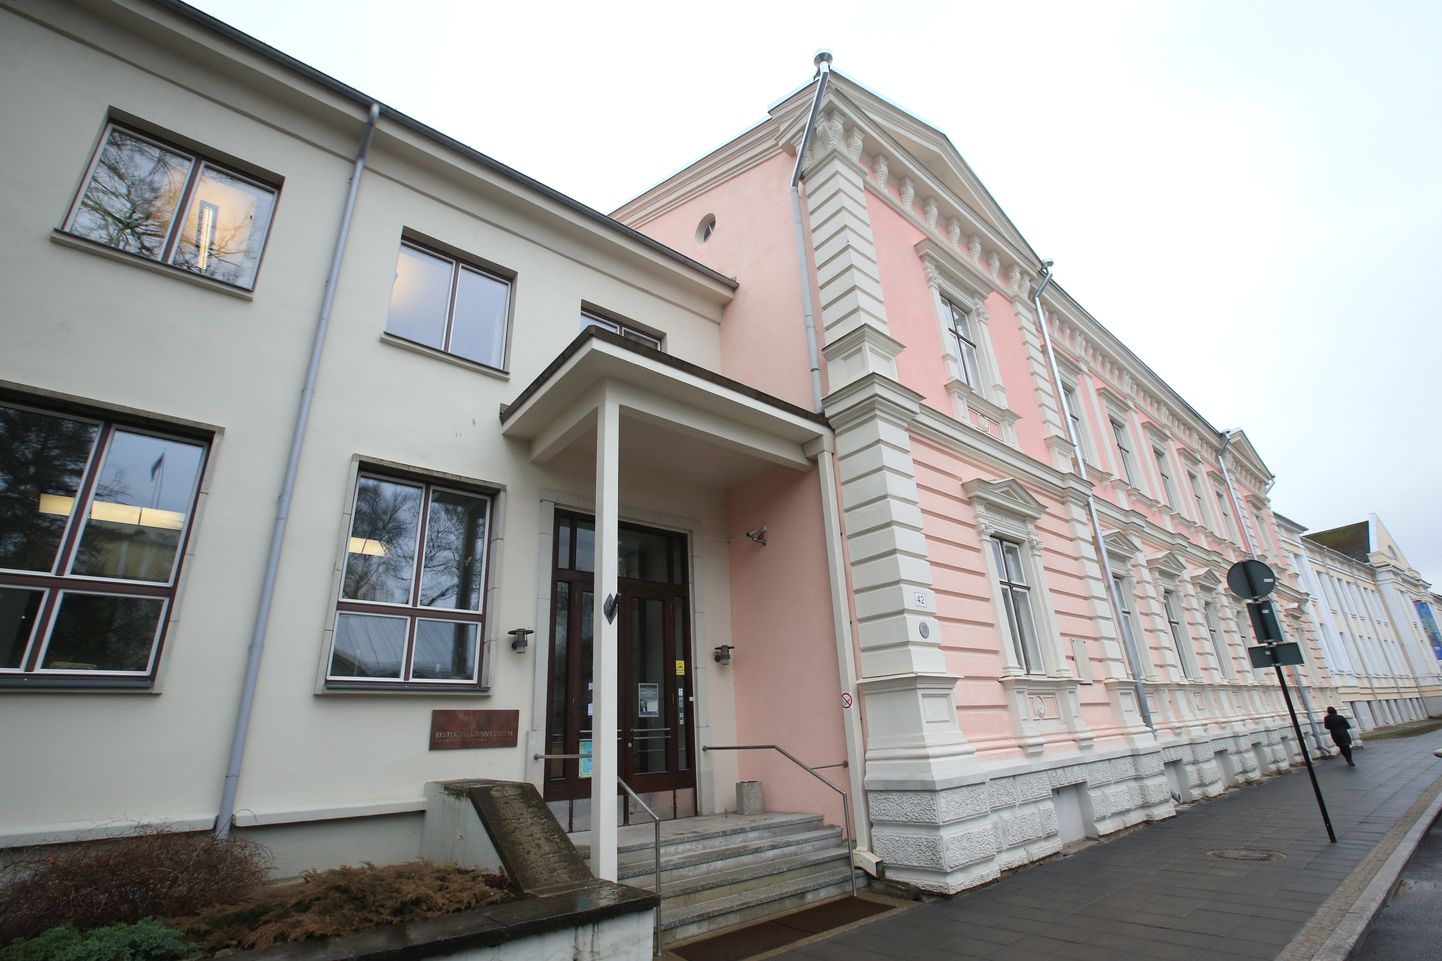 Eesti kirjandusmuuseum asub Tartus Vanemuise tänavas.